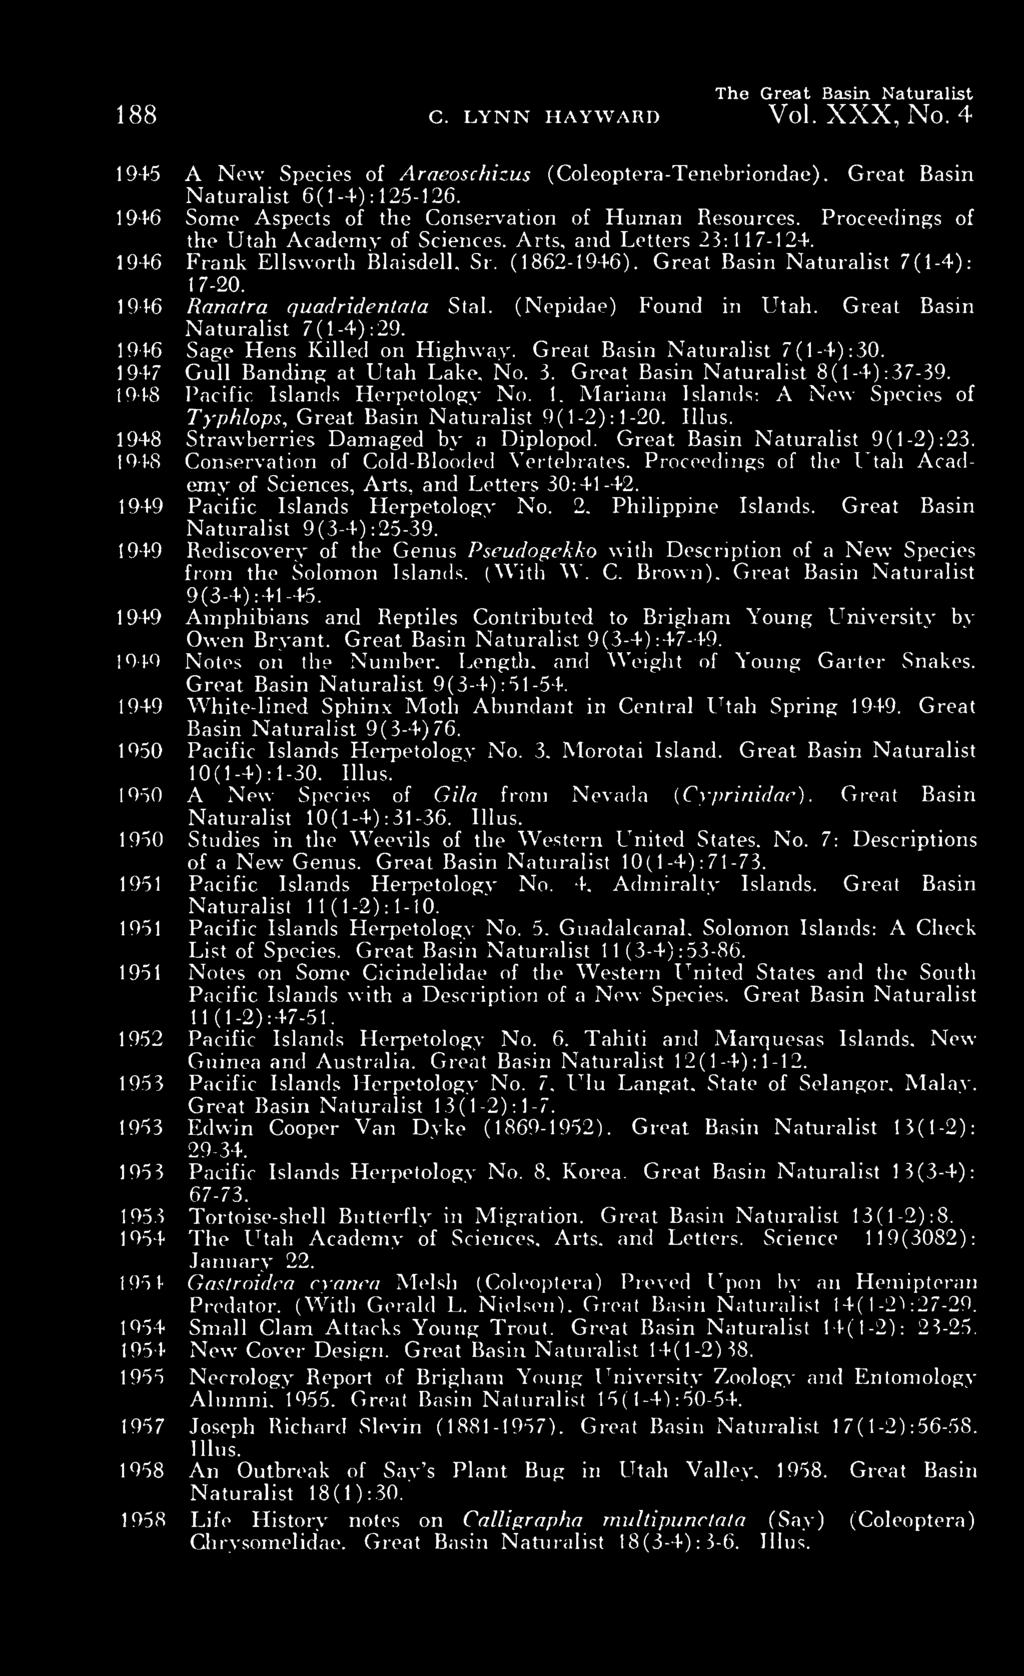 Great Basm Naturalist 7(1-4): 17-20. 1946 Ranatra quadridentala Stal. (Nepidae) Found in Utah. Great Basin Naturalist 7(1-4) :29. 1946 Sage Hens Killed on Highway. Great Basin Naturalist 7(1-4): 30.